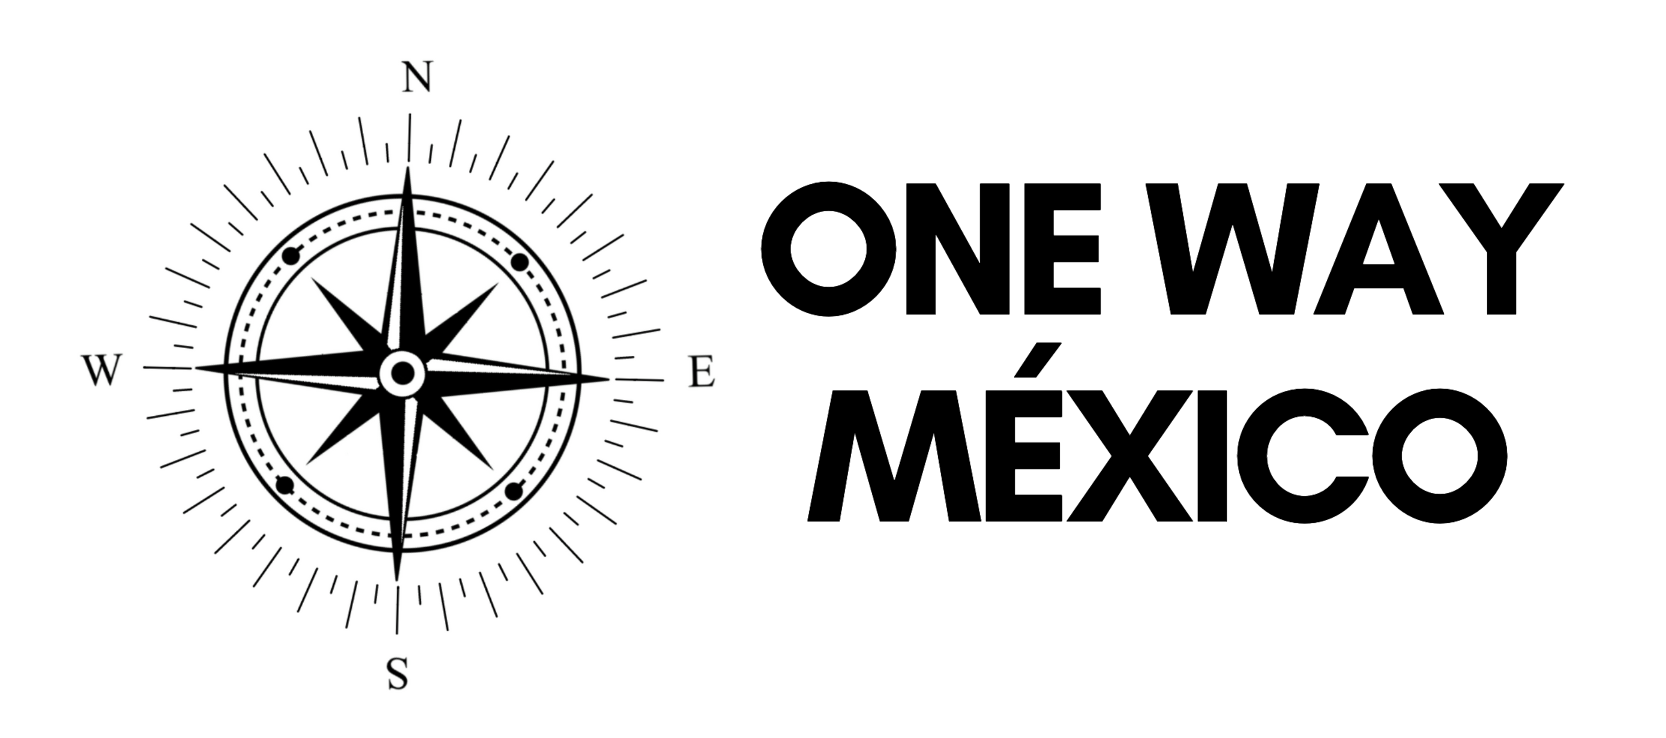 One Way Mexico - Conoce Mexico, Tour a Mexico